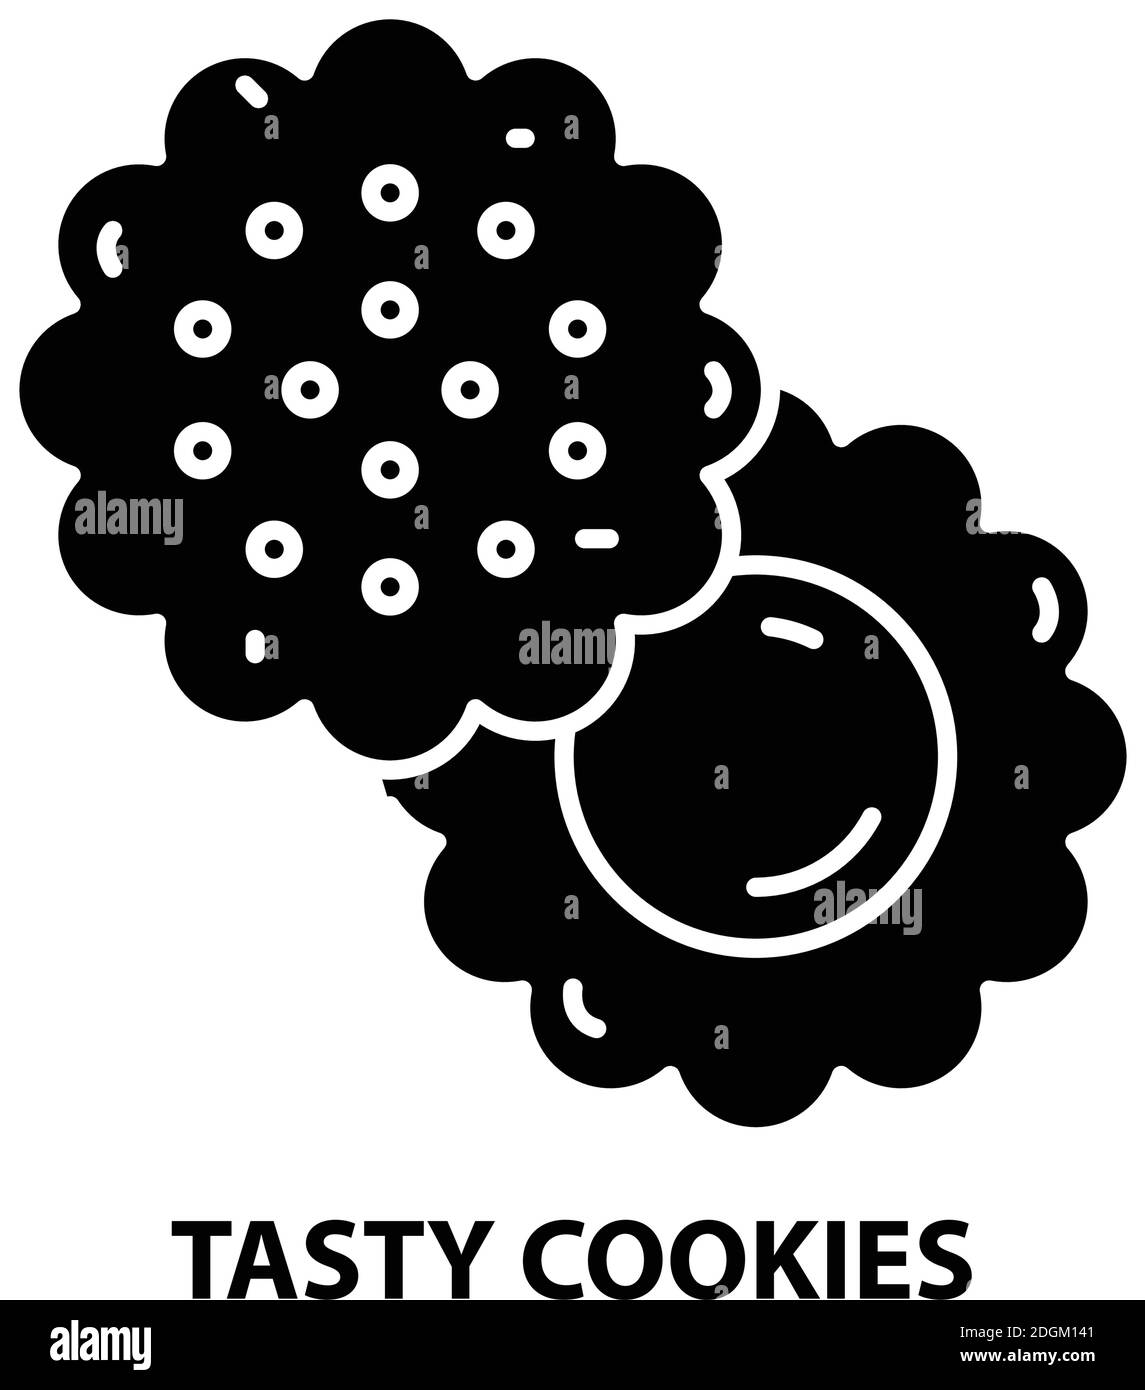 icona dei cookie gustosi, segno vettoriale nero con tratti modificabili, illustrazione concettuale Illustrazione Vettoriale